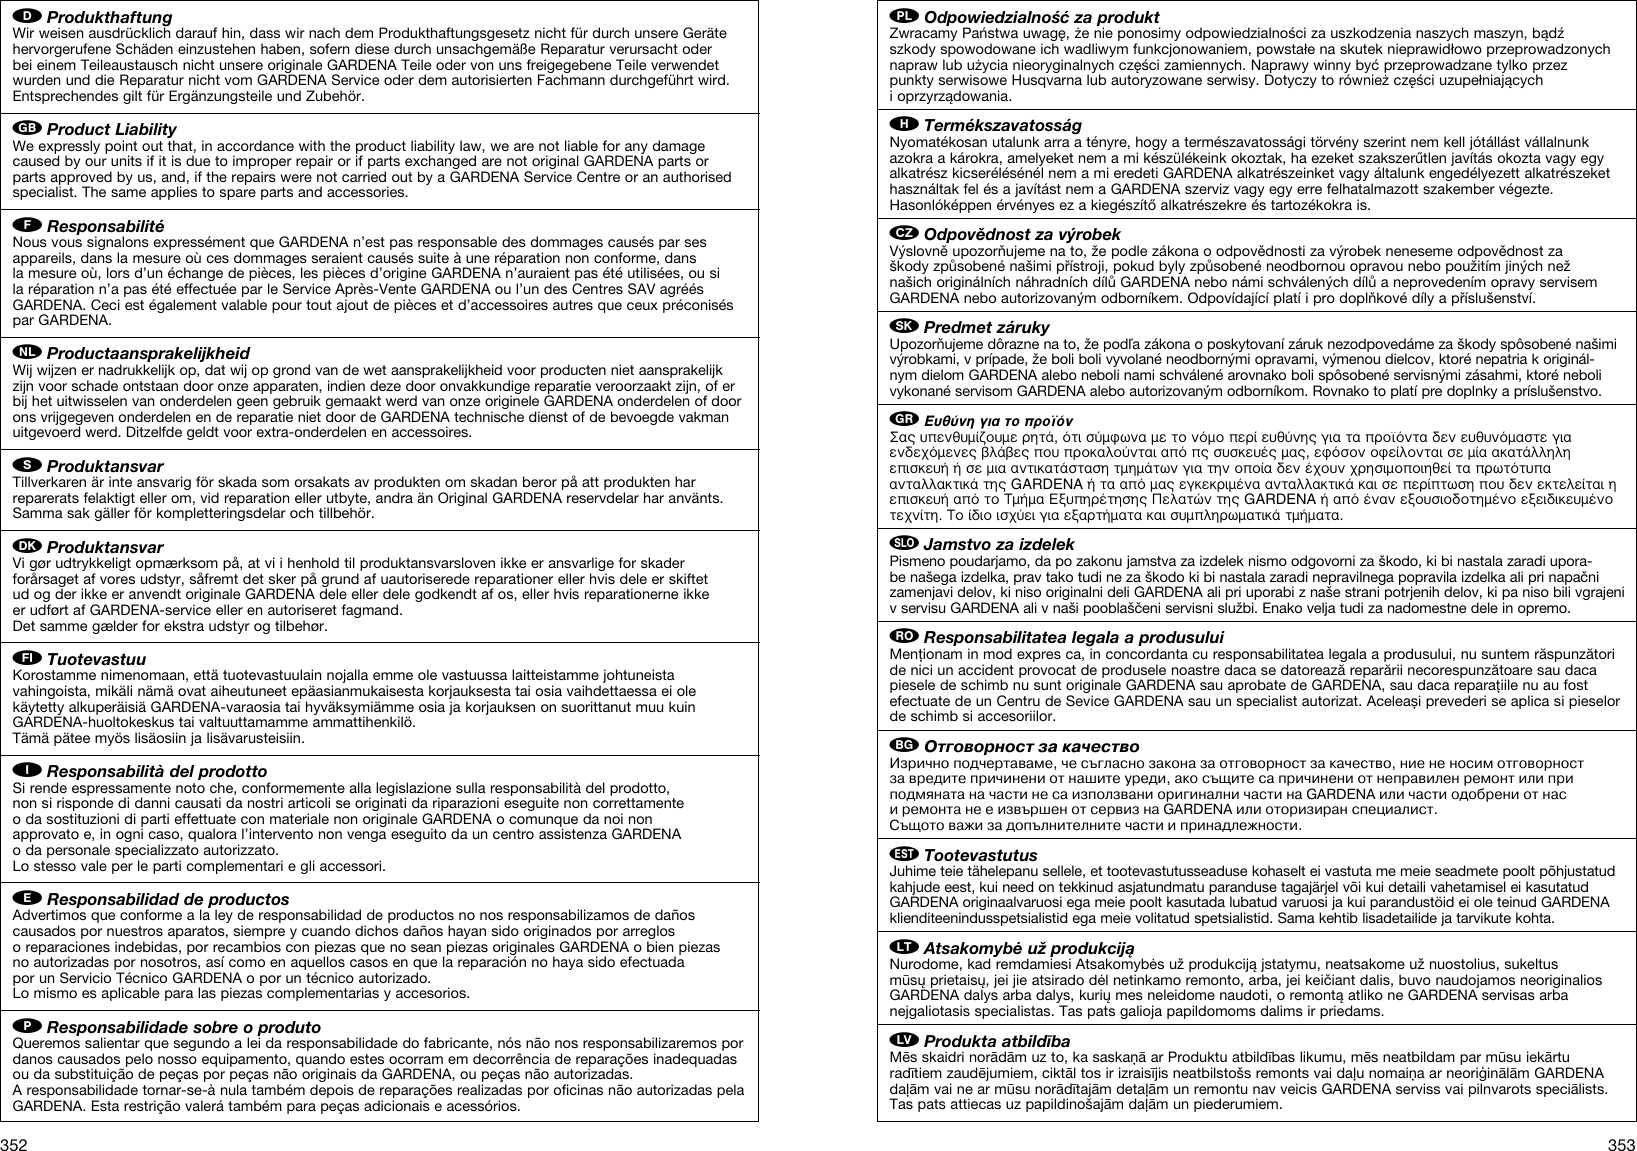 Page 8 of 10 - Gardena Gardena-Ergojet-Ej3000-Users-Manual- OM, Gardena, Blower/vacuum, Art 09332-20, 2012-01  Gardena-ergojet-ej3000-users-manual